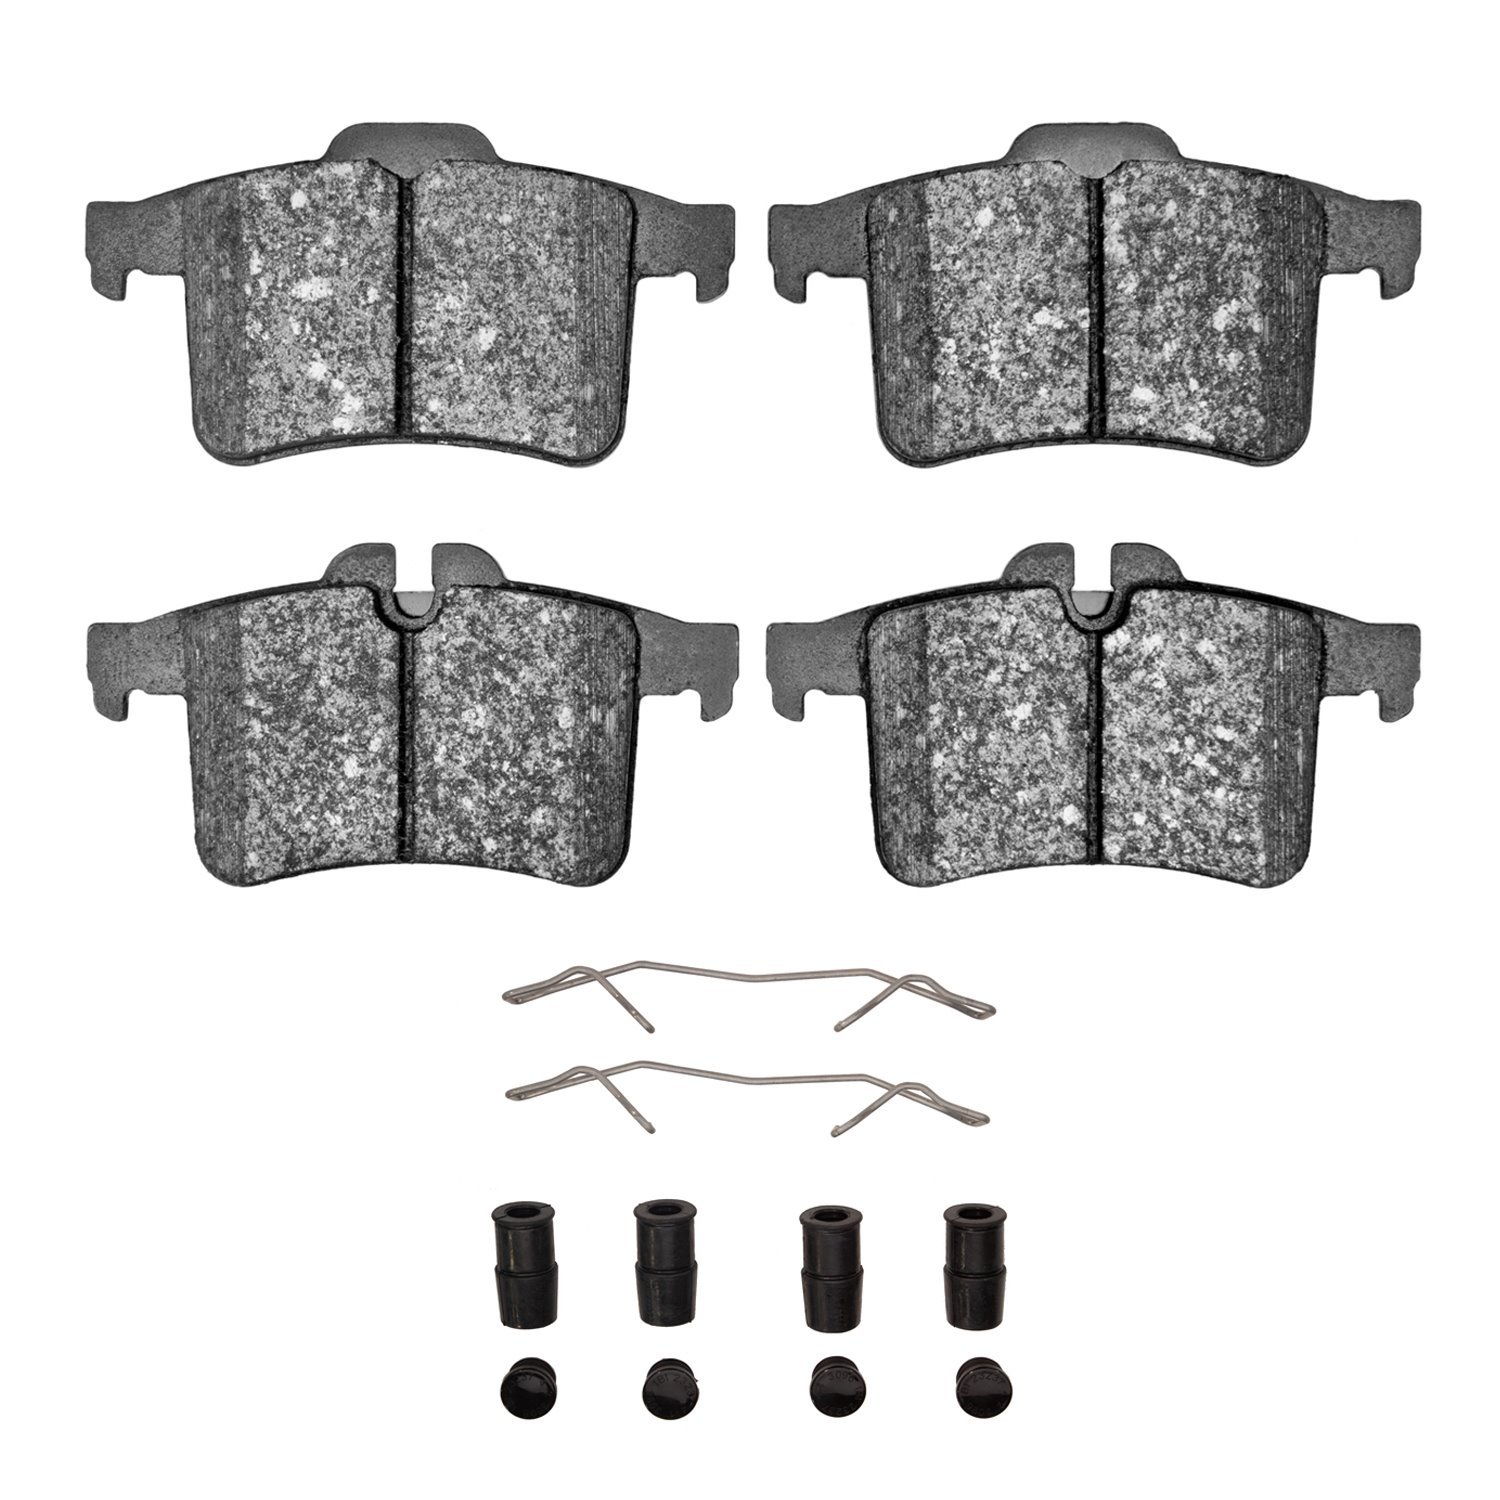 1551-1747-01 5000 Advanced Low-Metallic Brake Pads & Hardware Kit, 2013-2015 Jaguar, Position: Rear